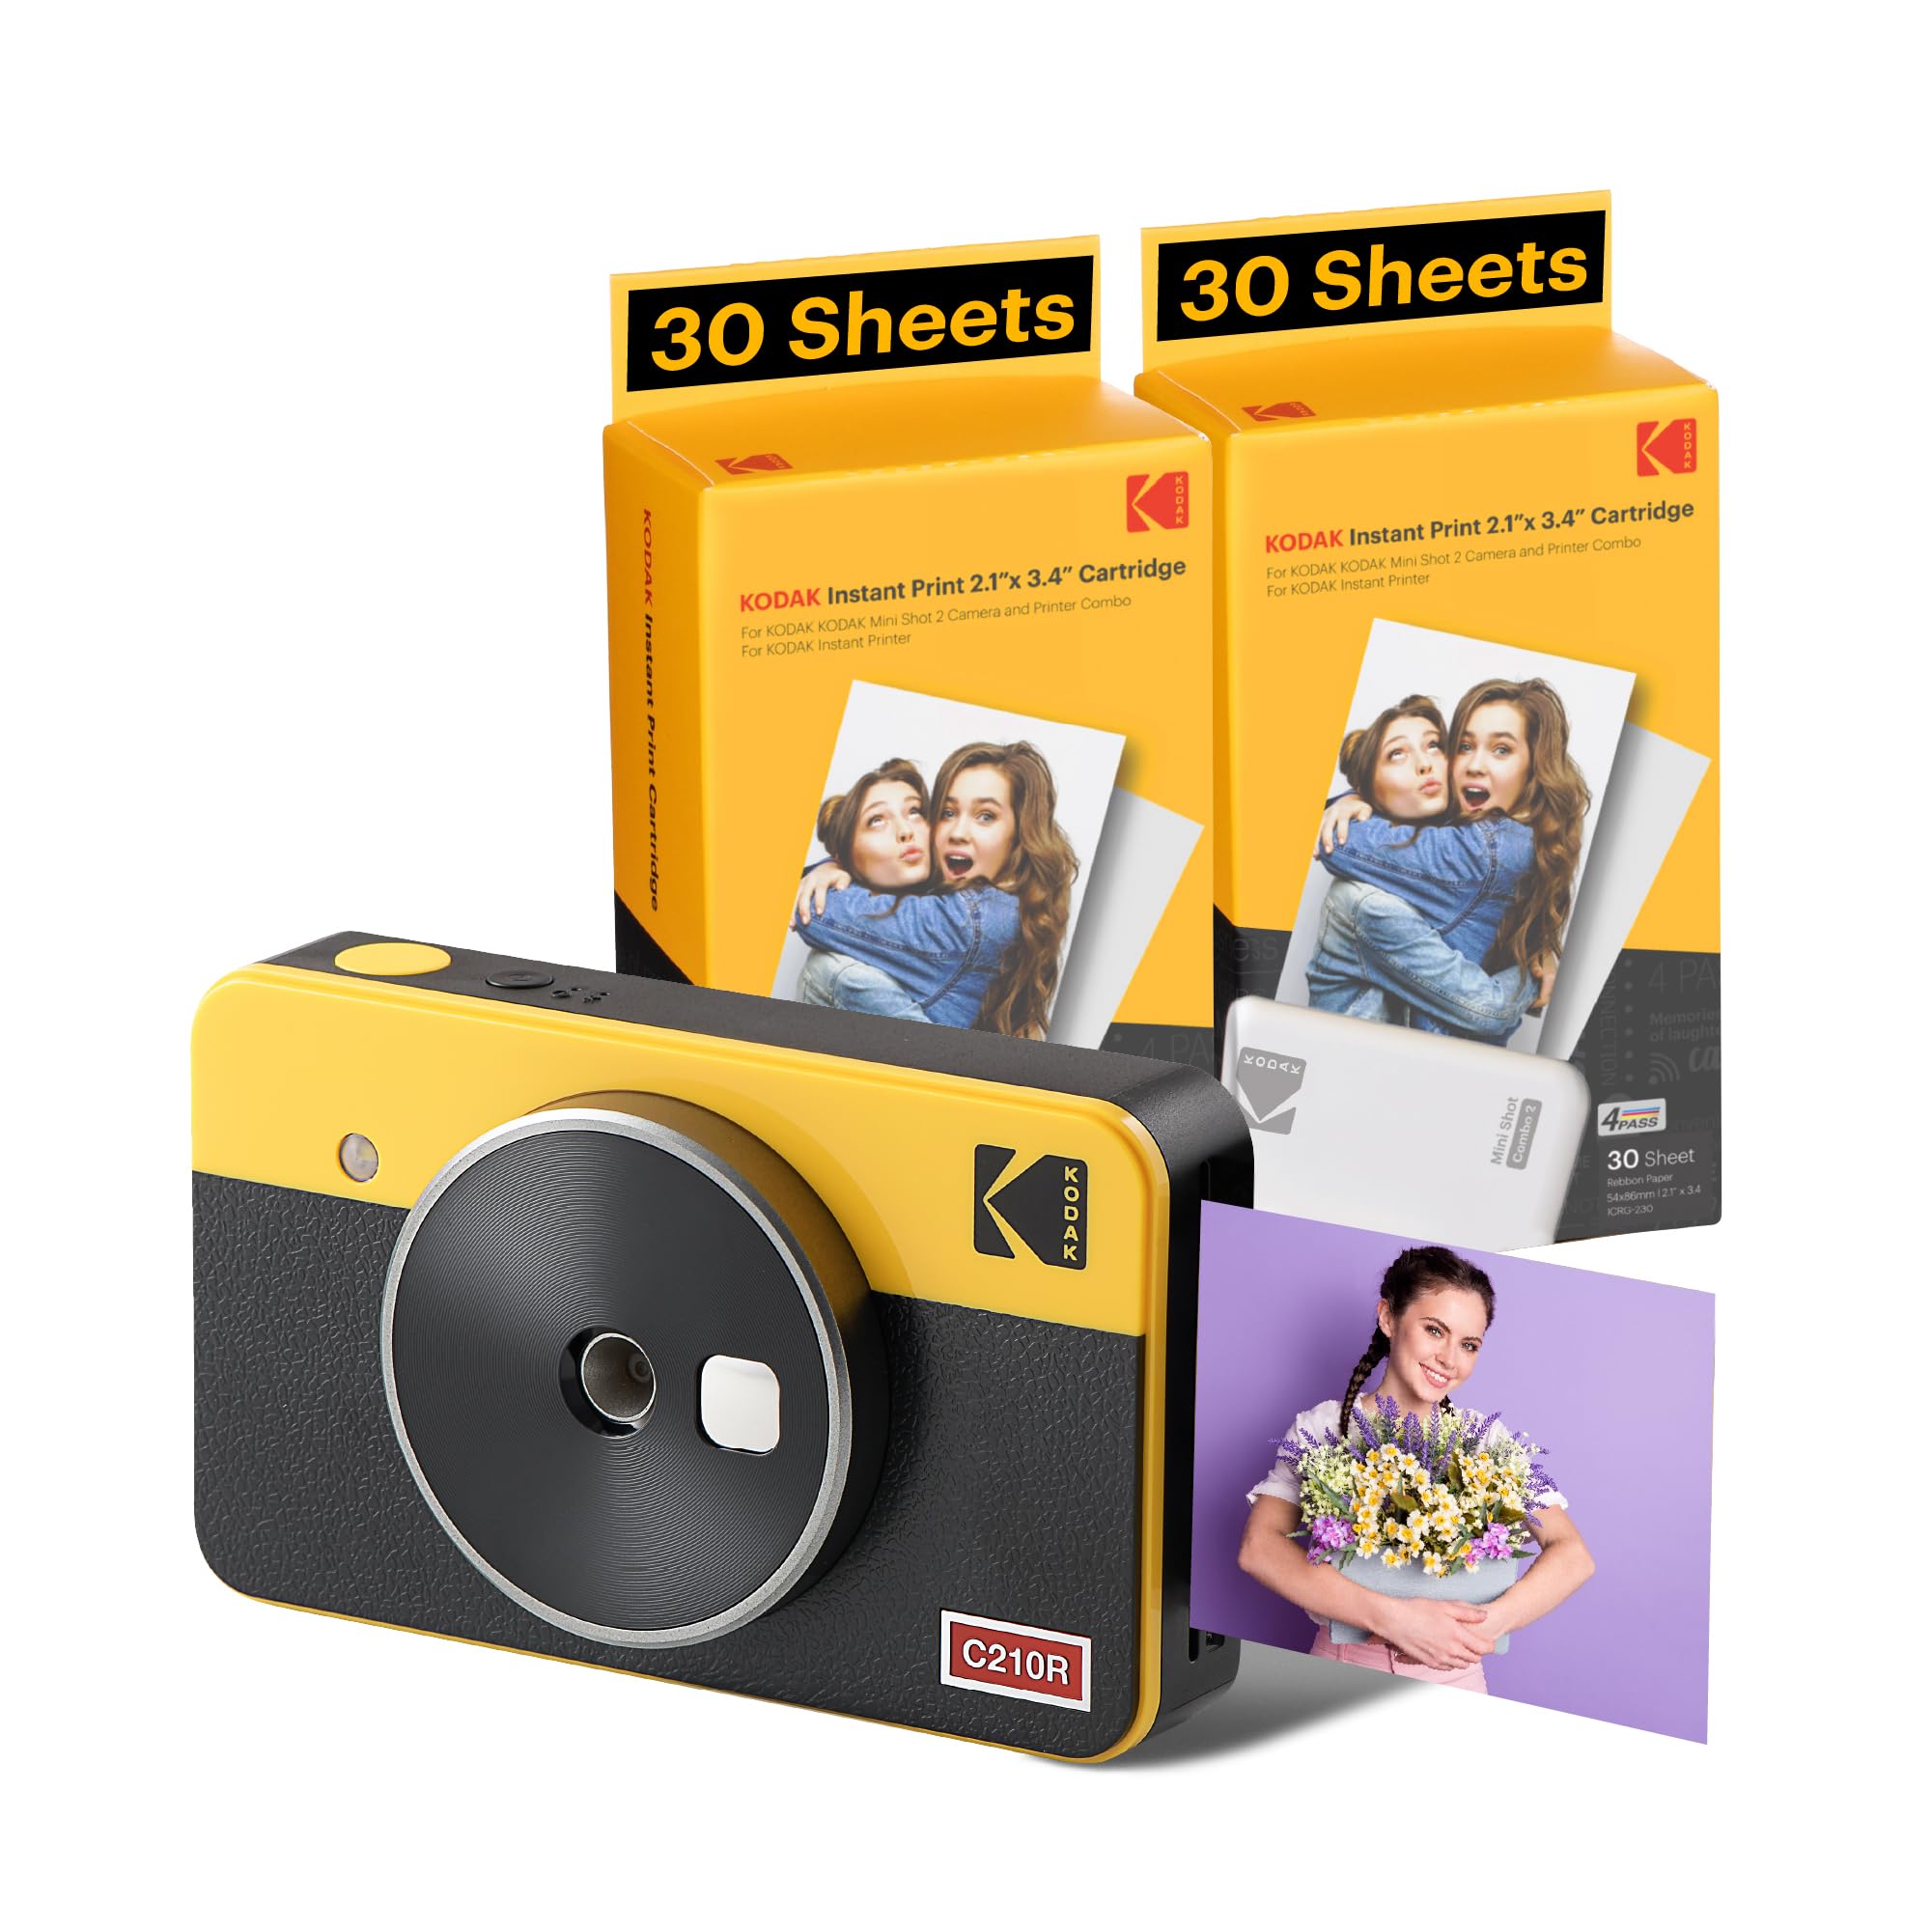 prix de gros KODAK Mini Shot 2 Retro 4Pass Appareil Photo instantané 2 en 1 avec imprimante Photo (5,3 x 8,6 cm) et 1 Paquet de 68 Feuilles, Jaune 4tQnn0uPw en France Online